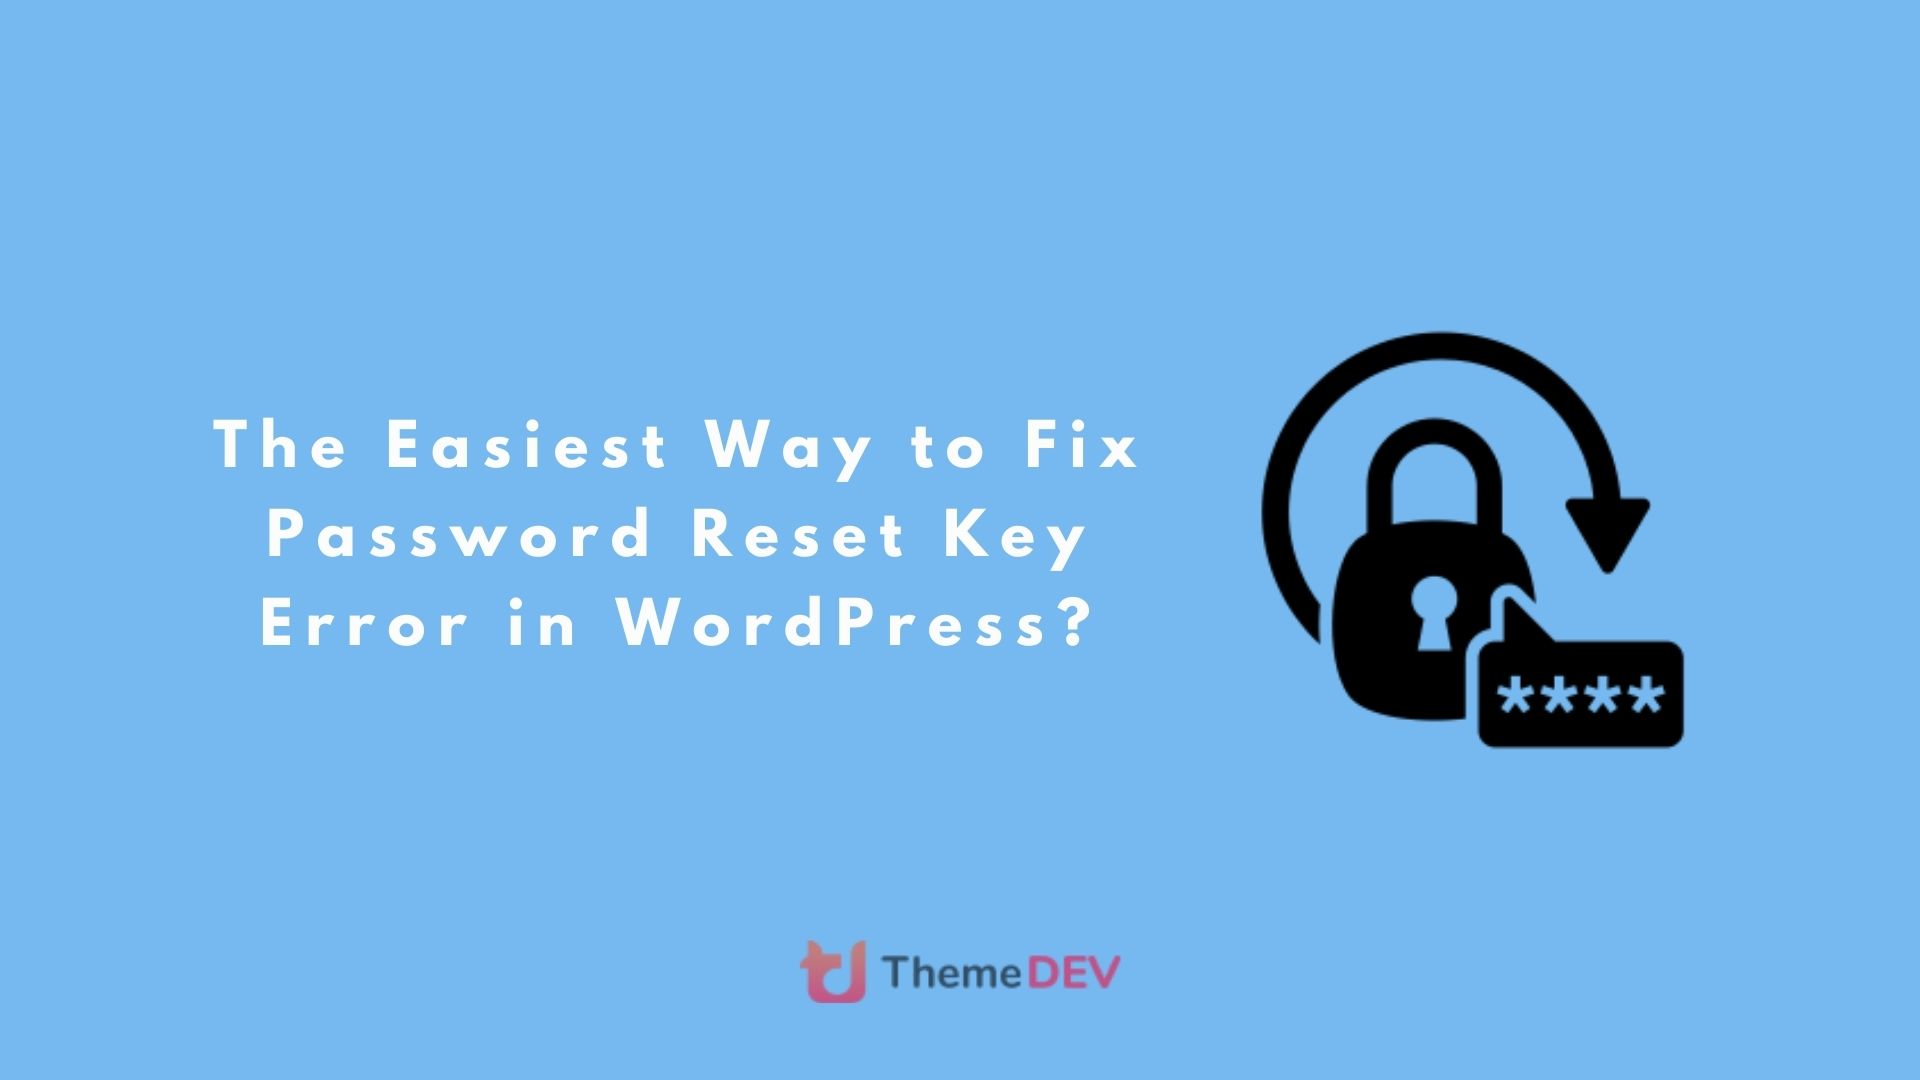 The Easiest Way to Fix Password Reset Key Error in WordPress?